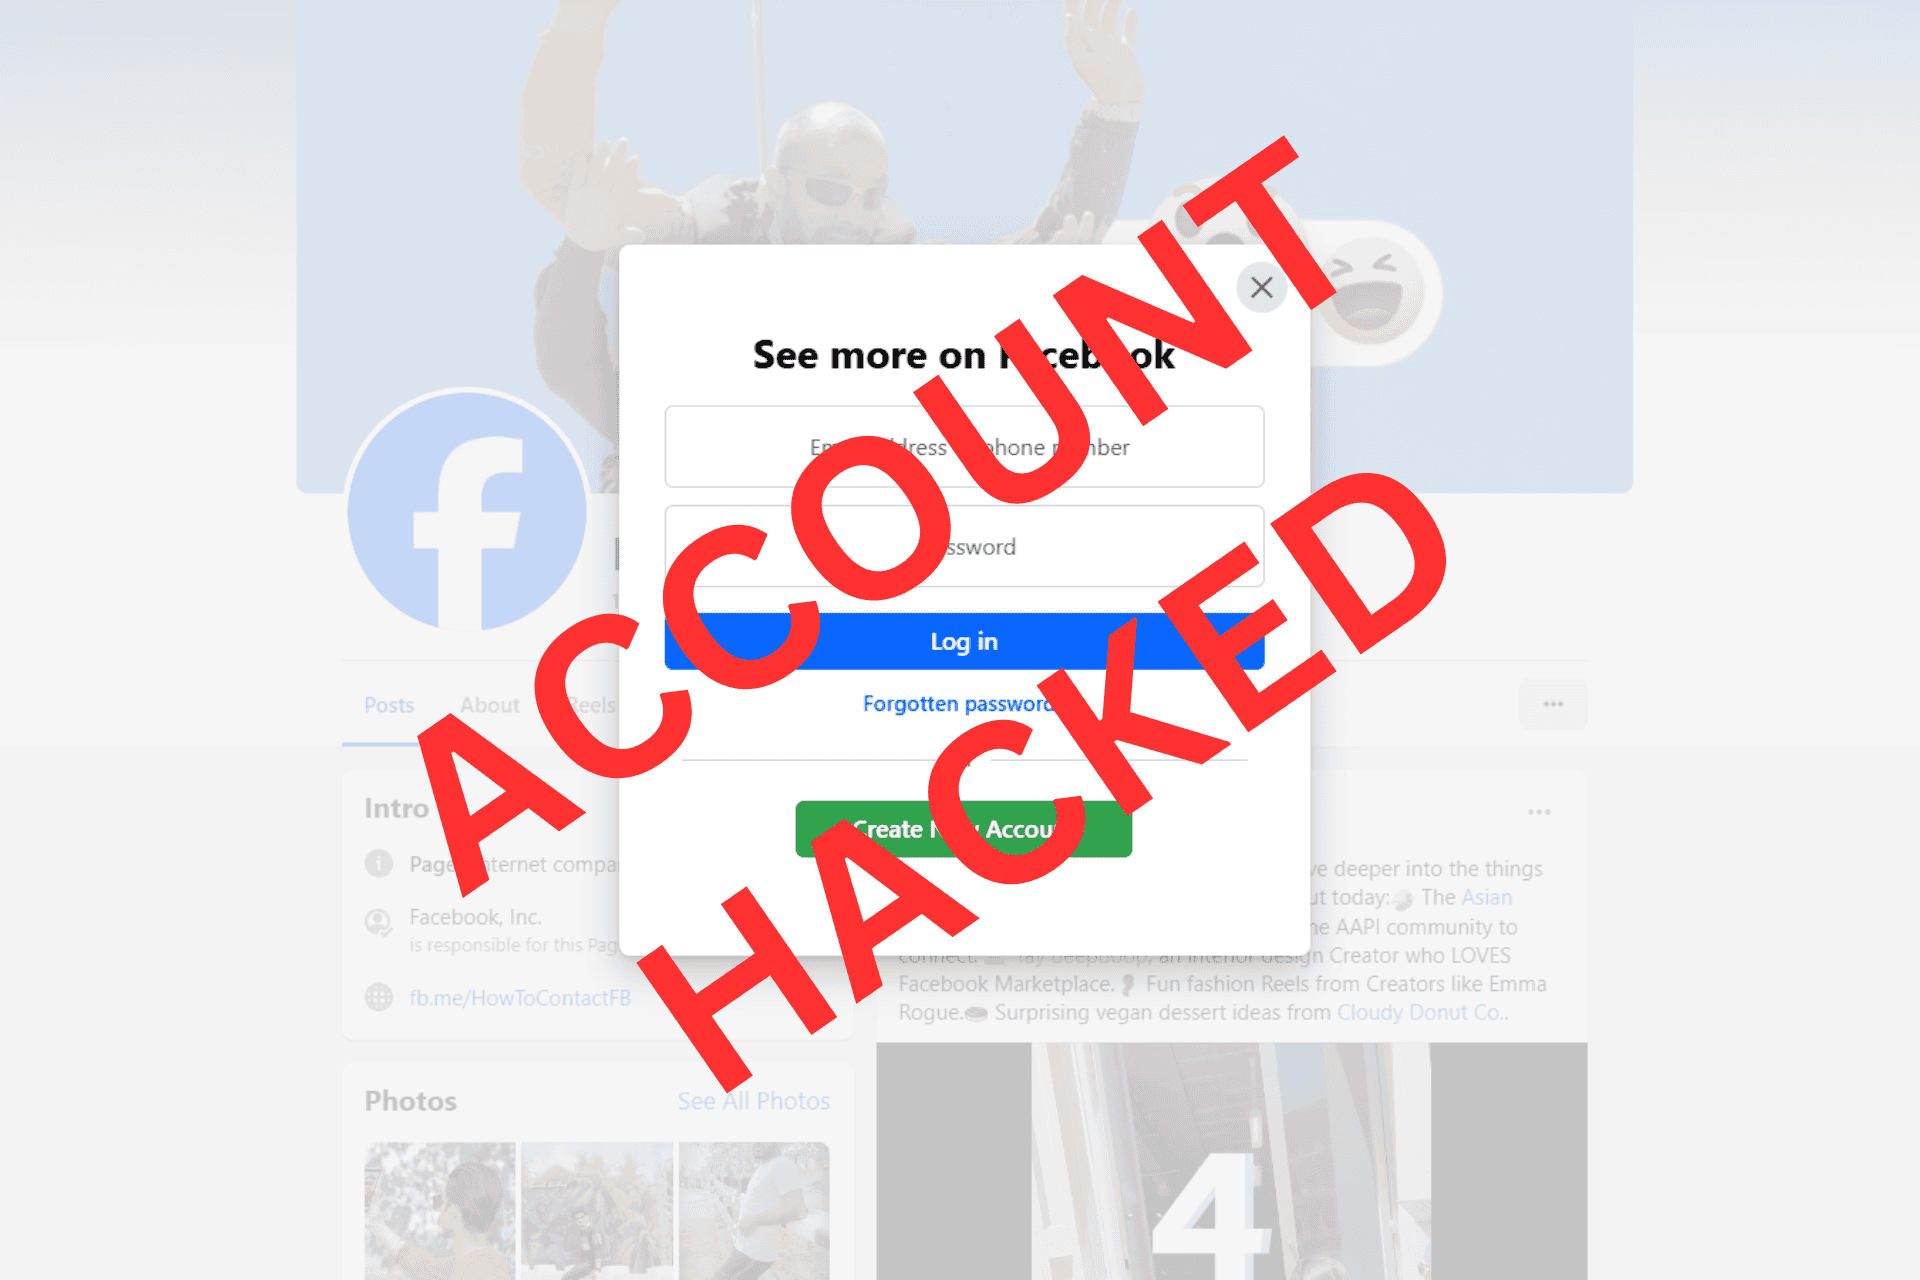 Facebook-konto hacket e-mail og telefon ændret